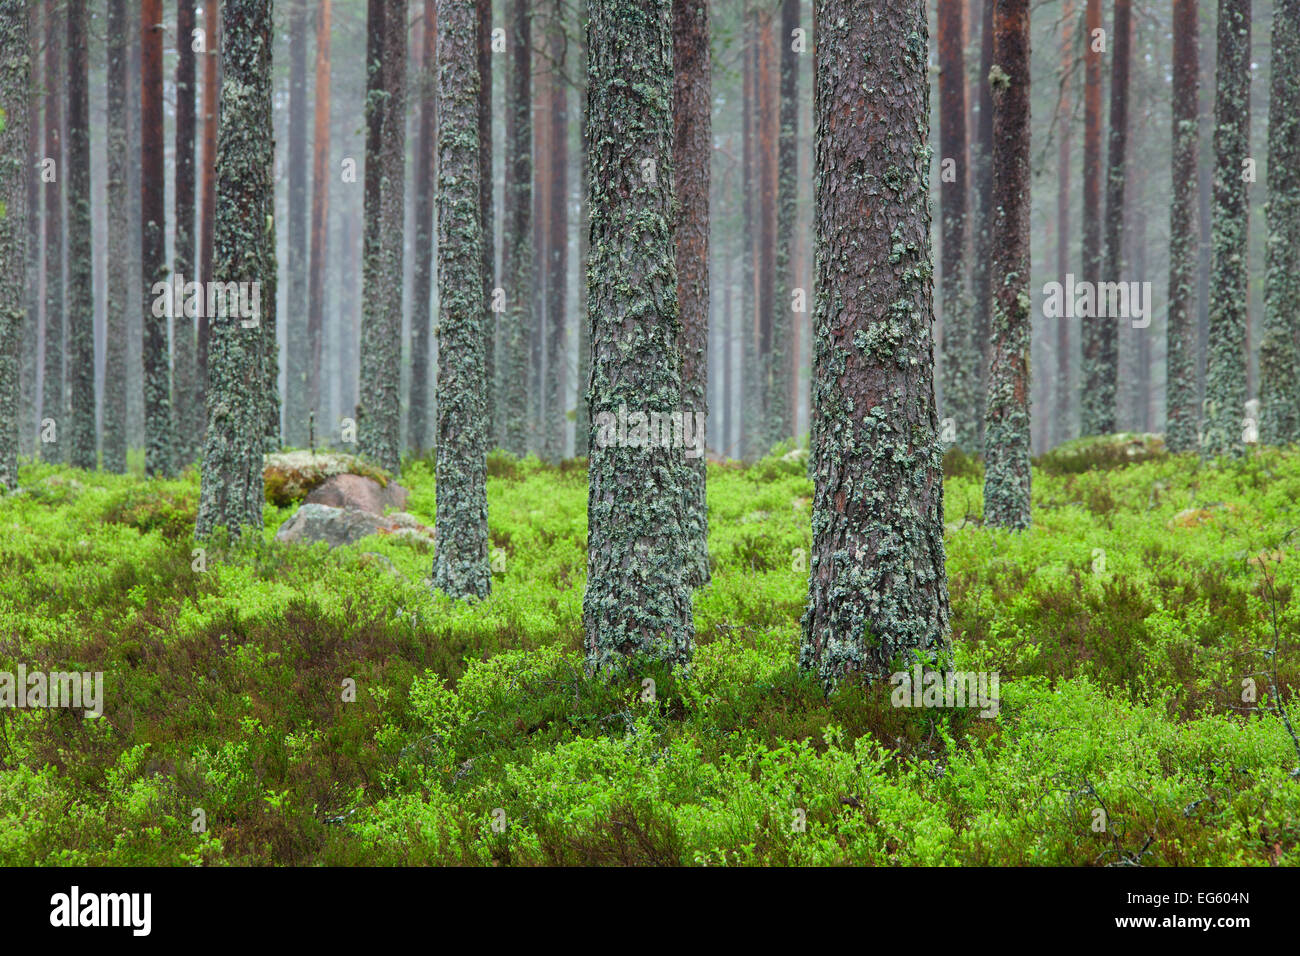 Di Pino silvestre (Pinus sylvestris), tronchi di alberi coperti nel tubo lichen (Hypogymnia physodes / Clairmont physodes) nella foresta di conifere Foto Stock